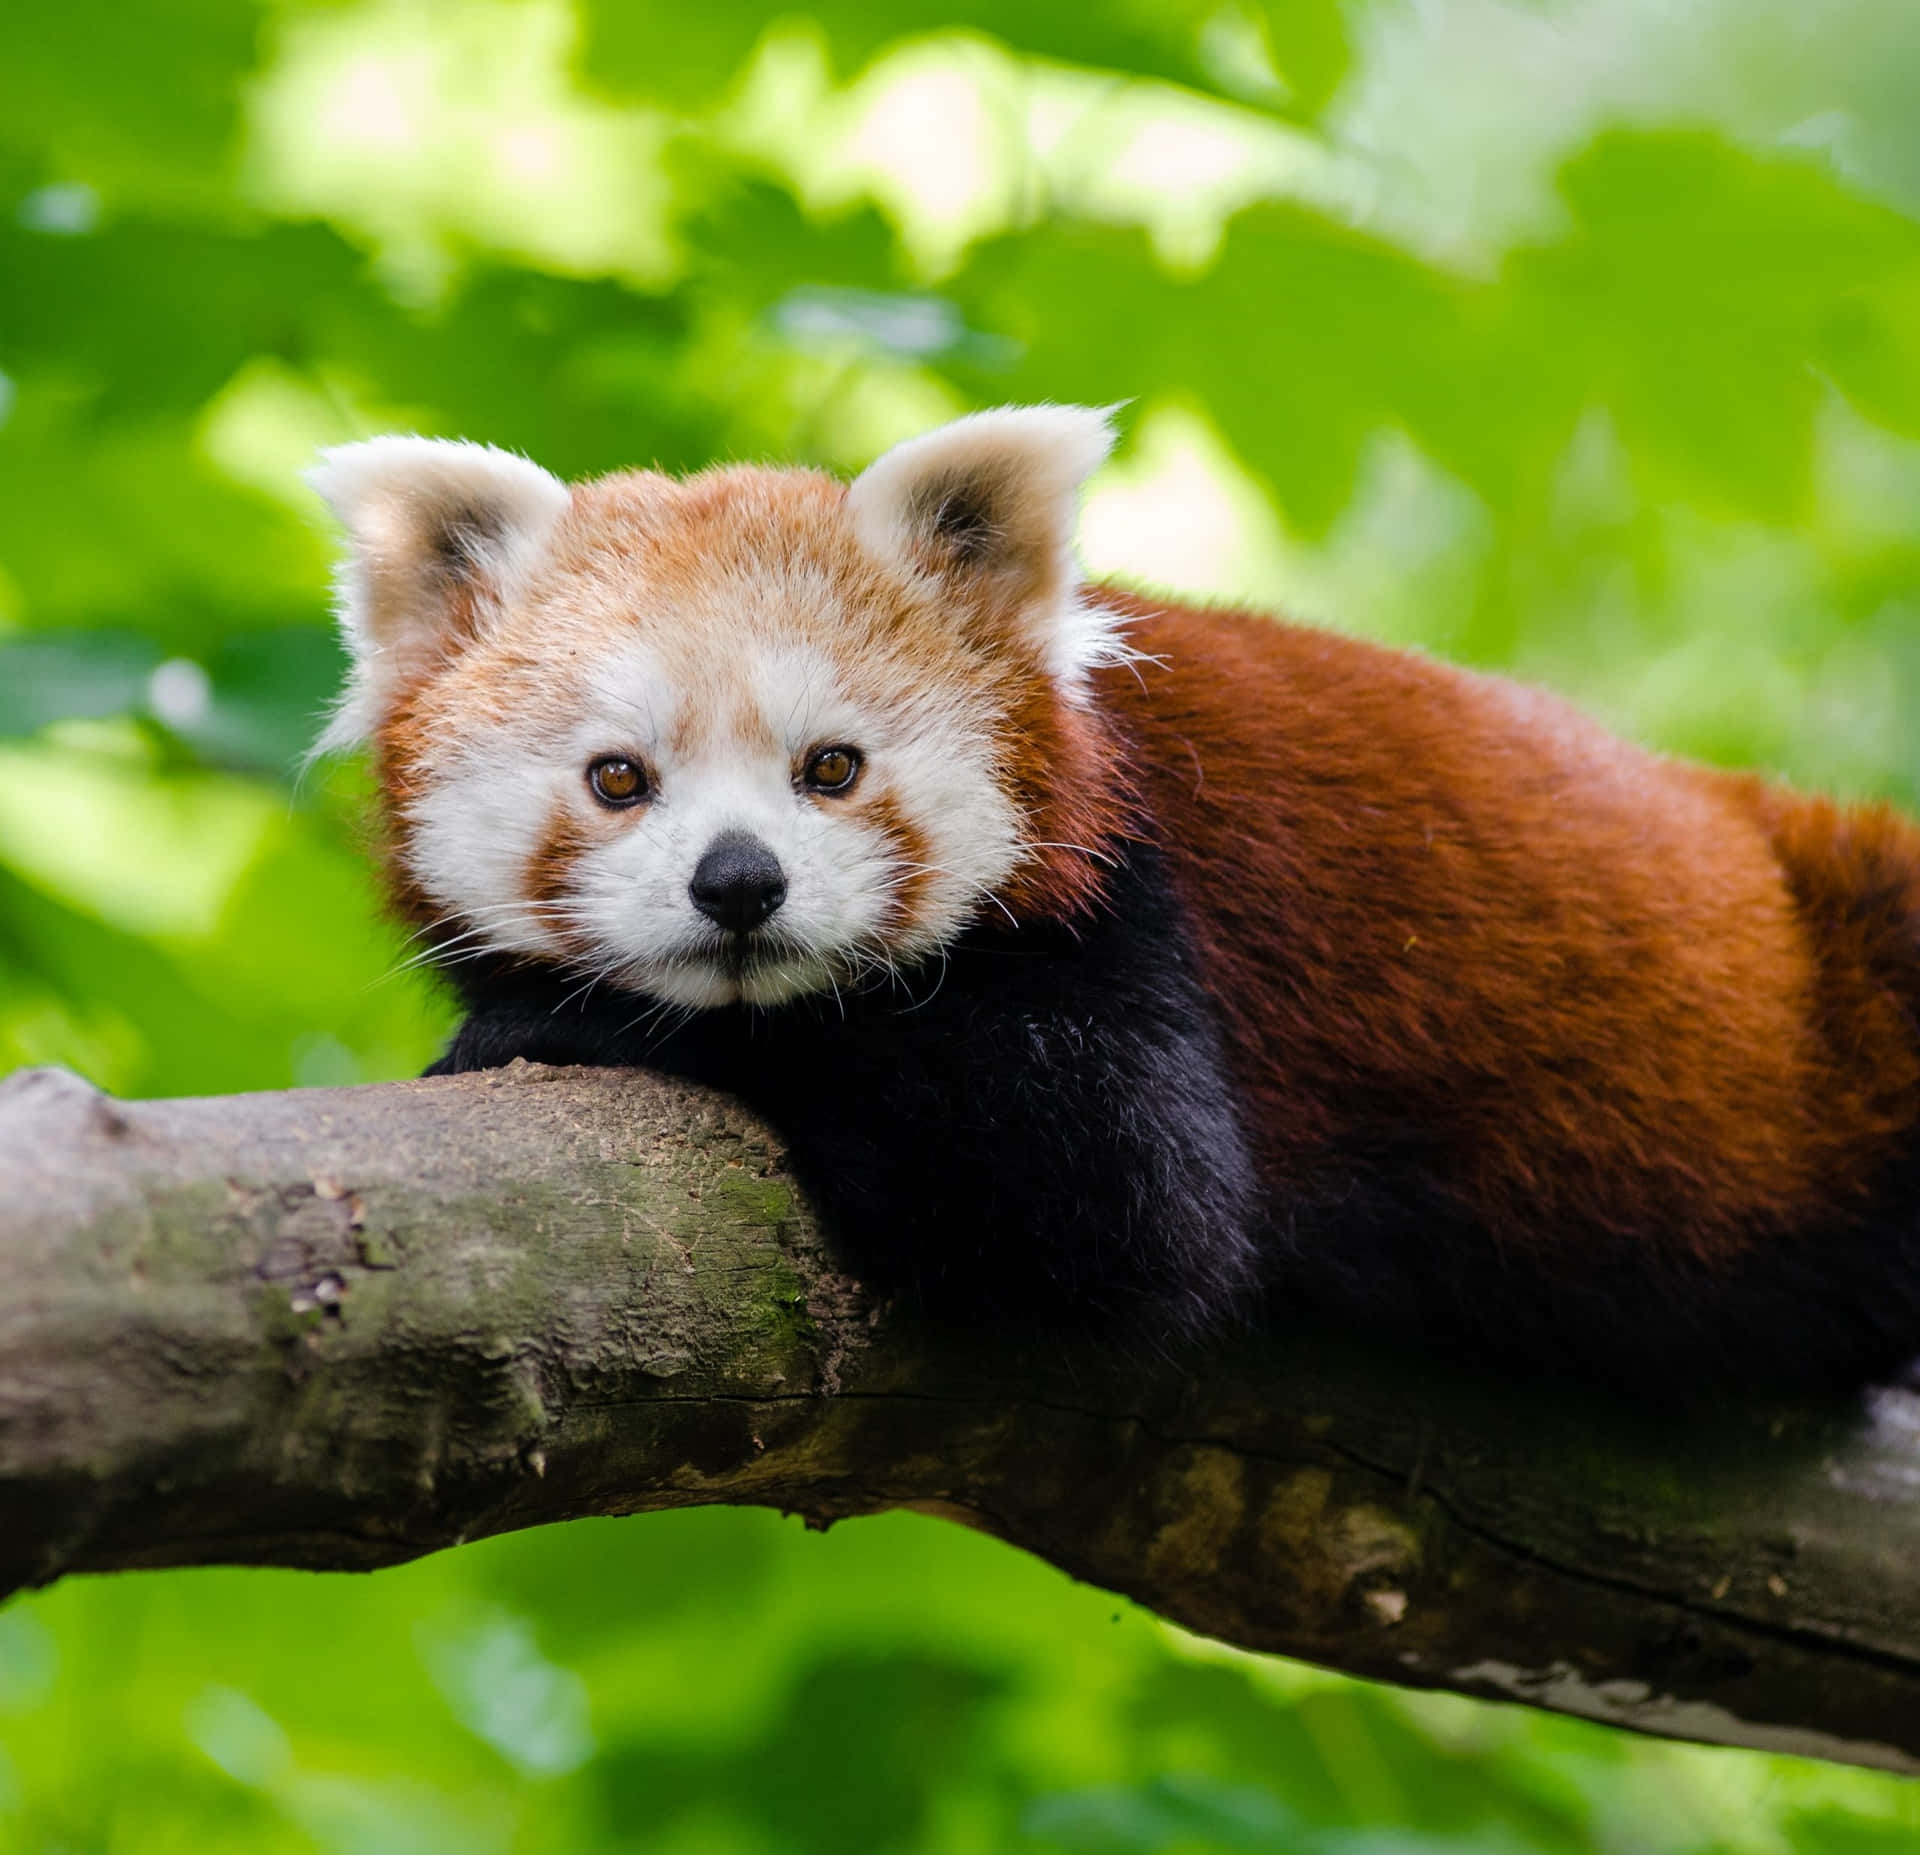 Fotodi Un Carino Panda Rosso Su Un Ramo D'albero.